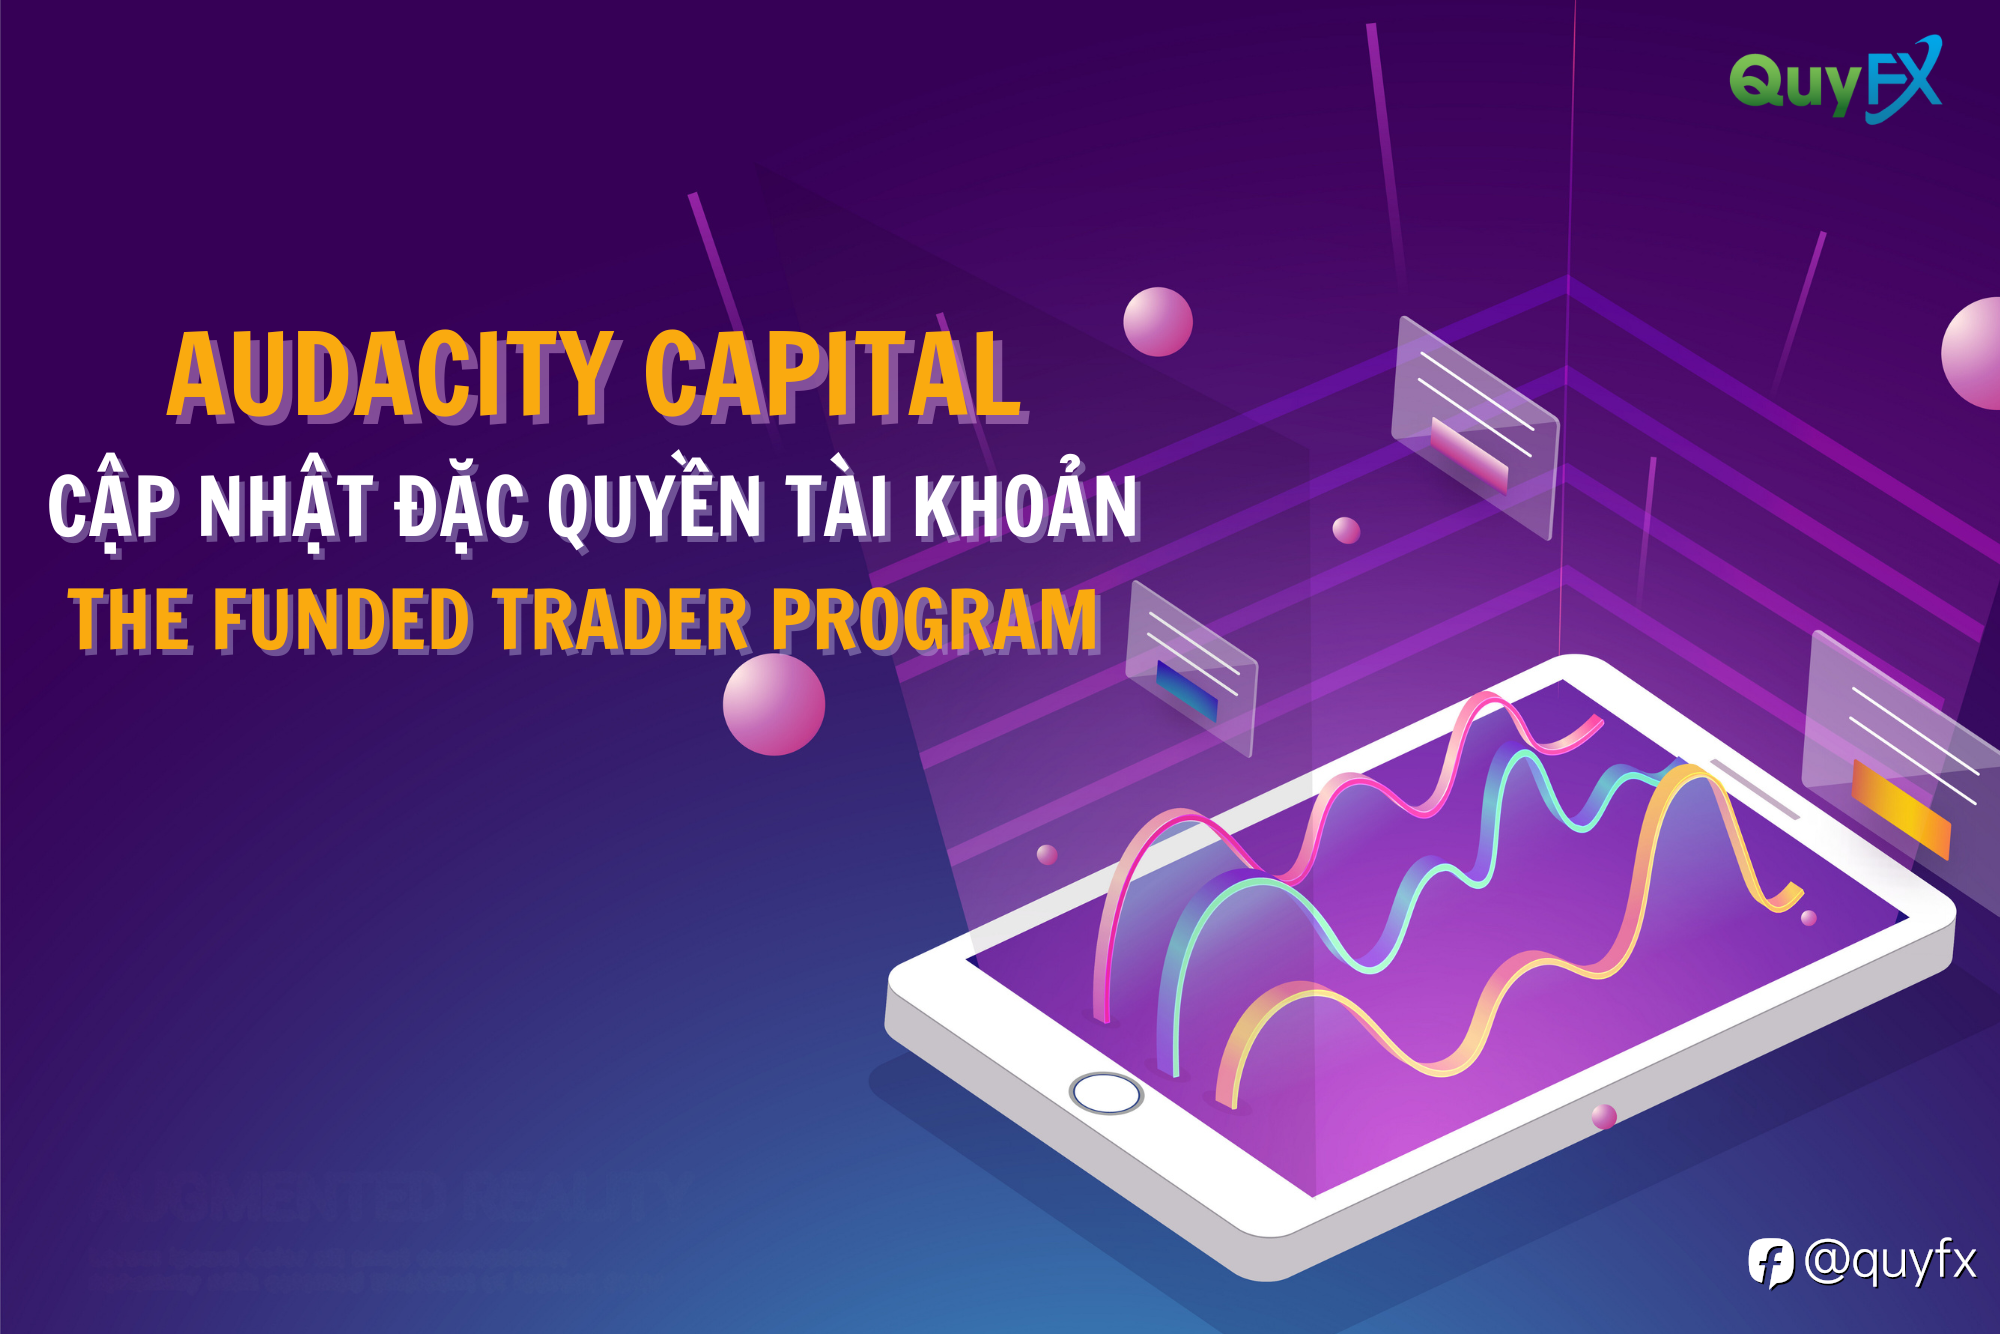 [NEW] Audacity Capital cập nhật đặc quyền tài khoản The Funded Trader Program